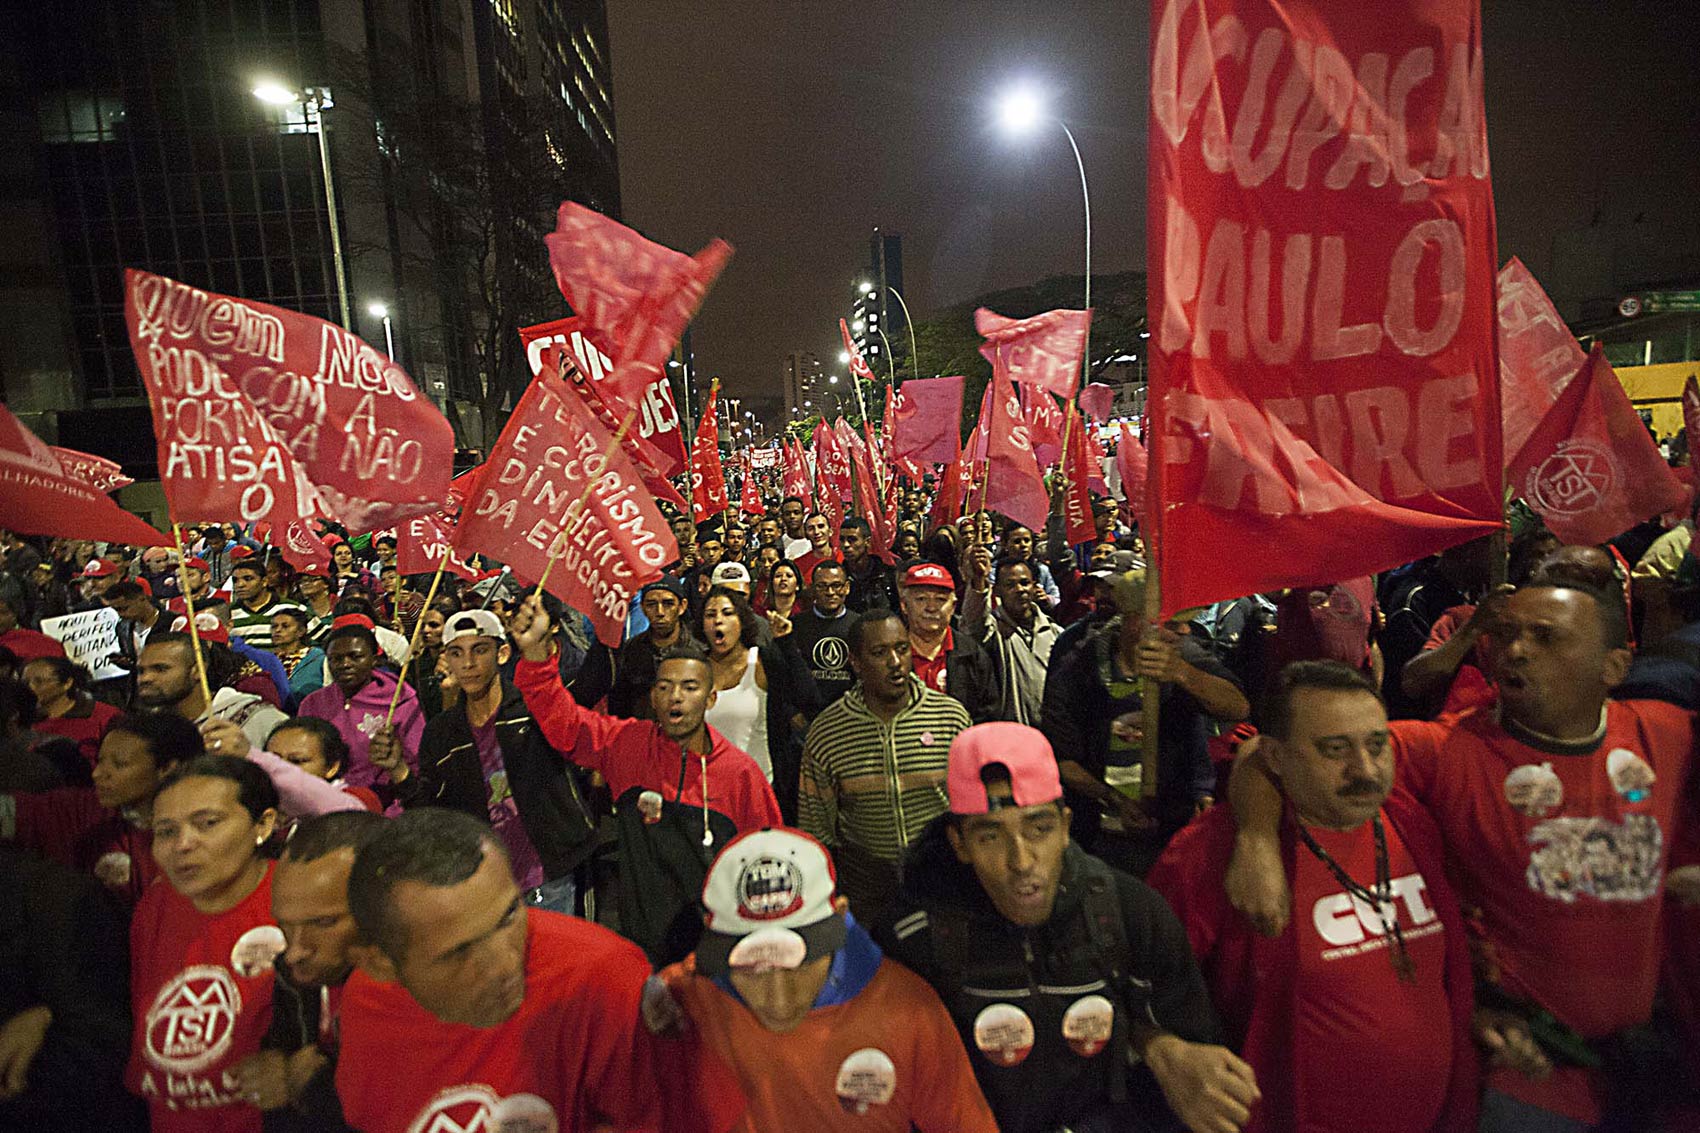 Manifestantes chegam à Avenida Paulista em passeata levando bandeiras vermelhas em defesa da democracia e contra a ameaça de golpe militar, em São Paulo